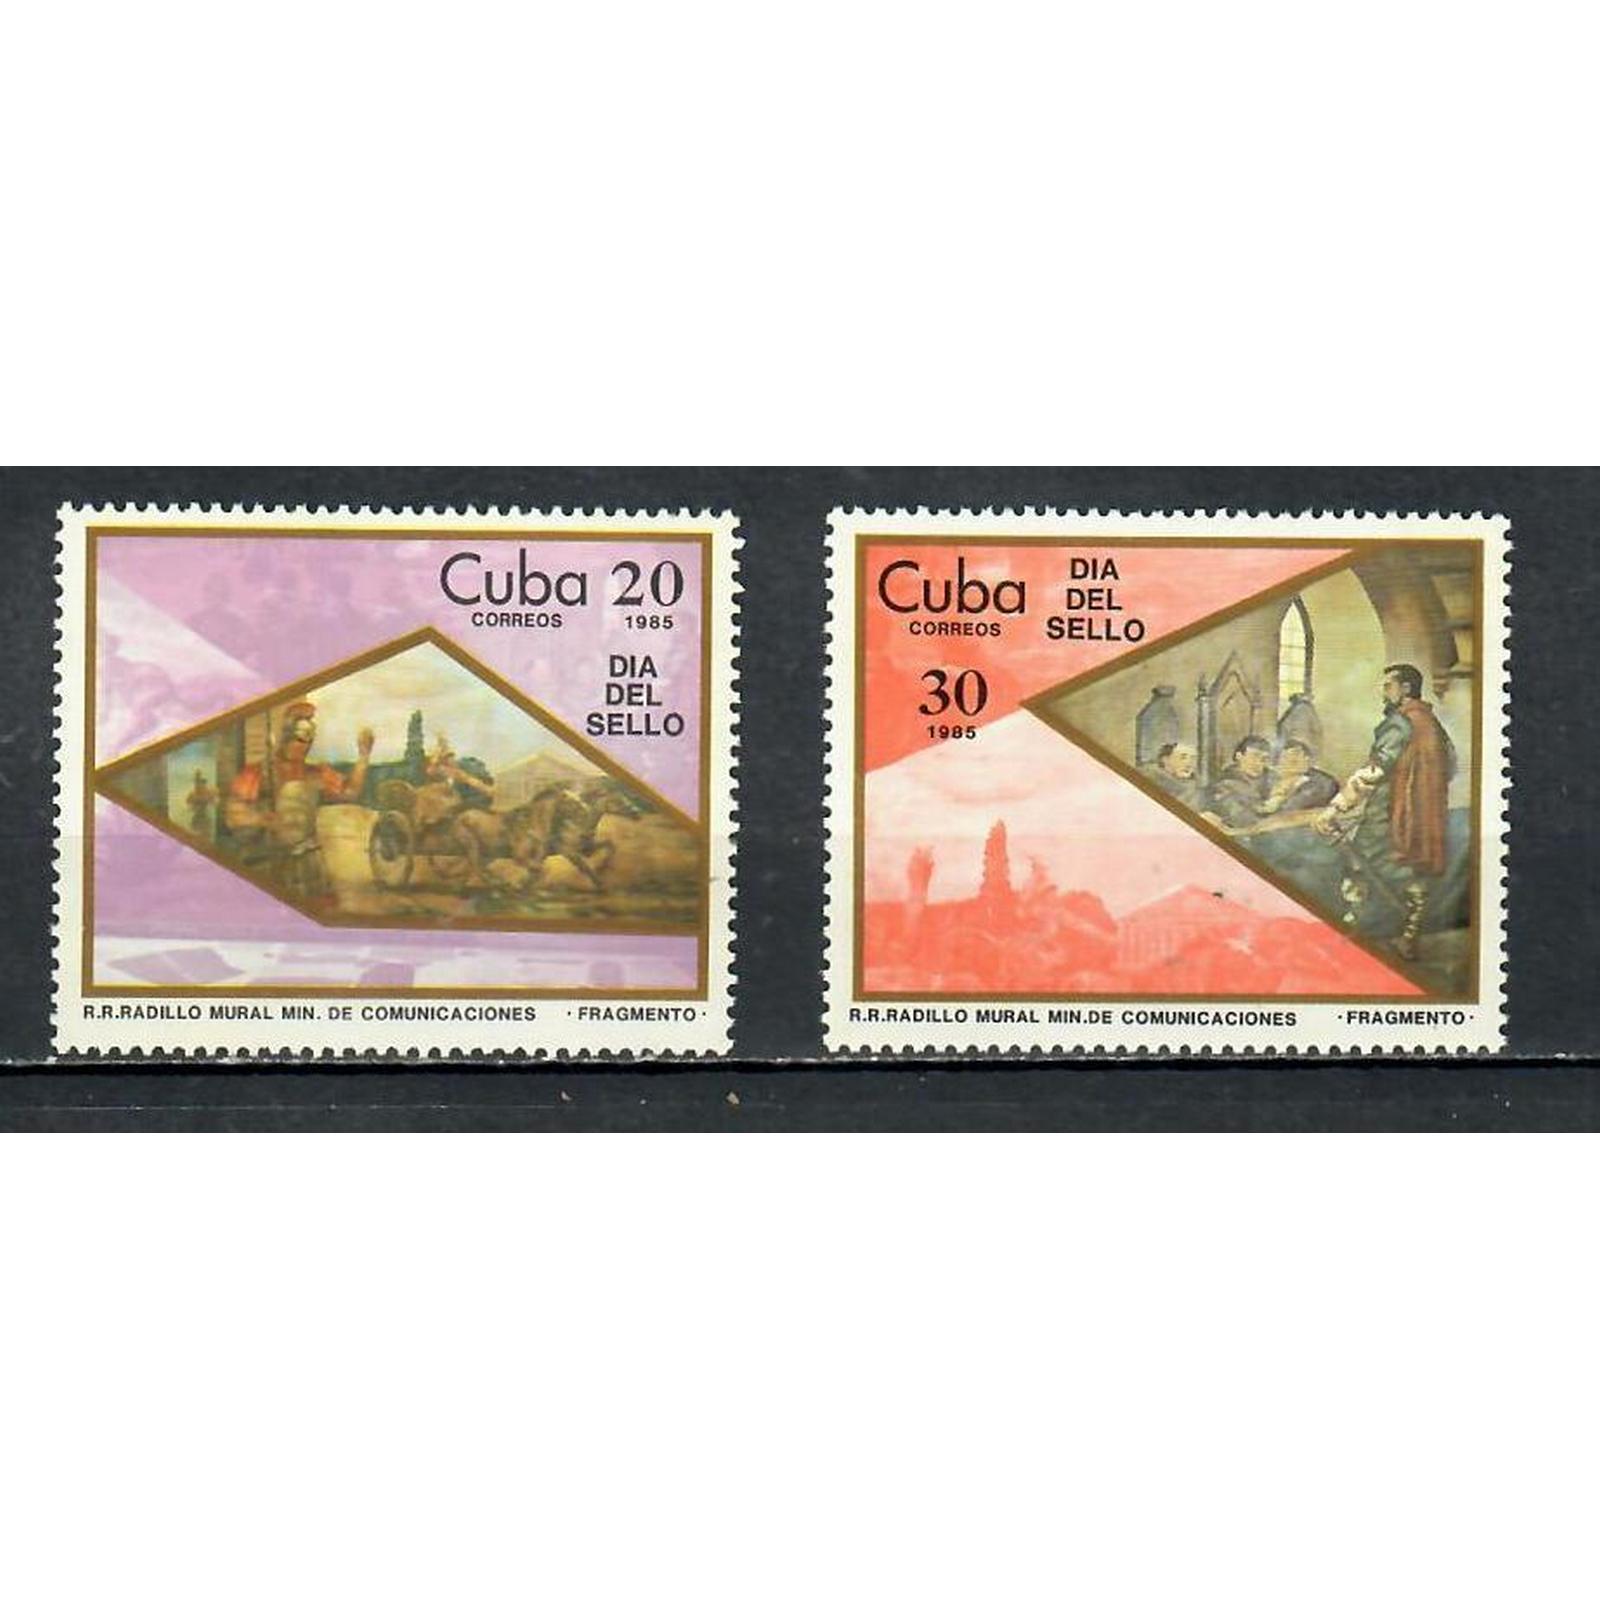 Cuba марки 1985 год. Марки современные. Почтовые марки Кубы по годам. Марки Кубы 1900. Сколько стоит марка куба